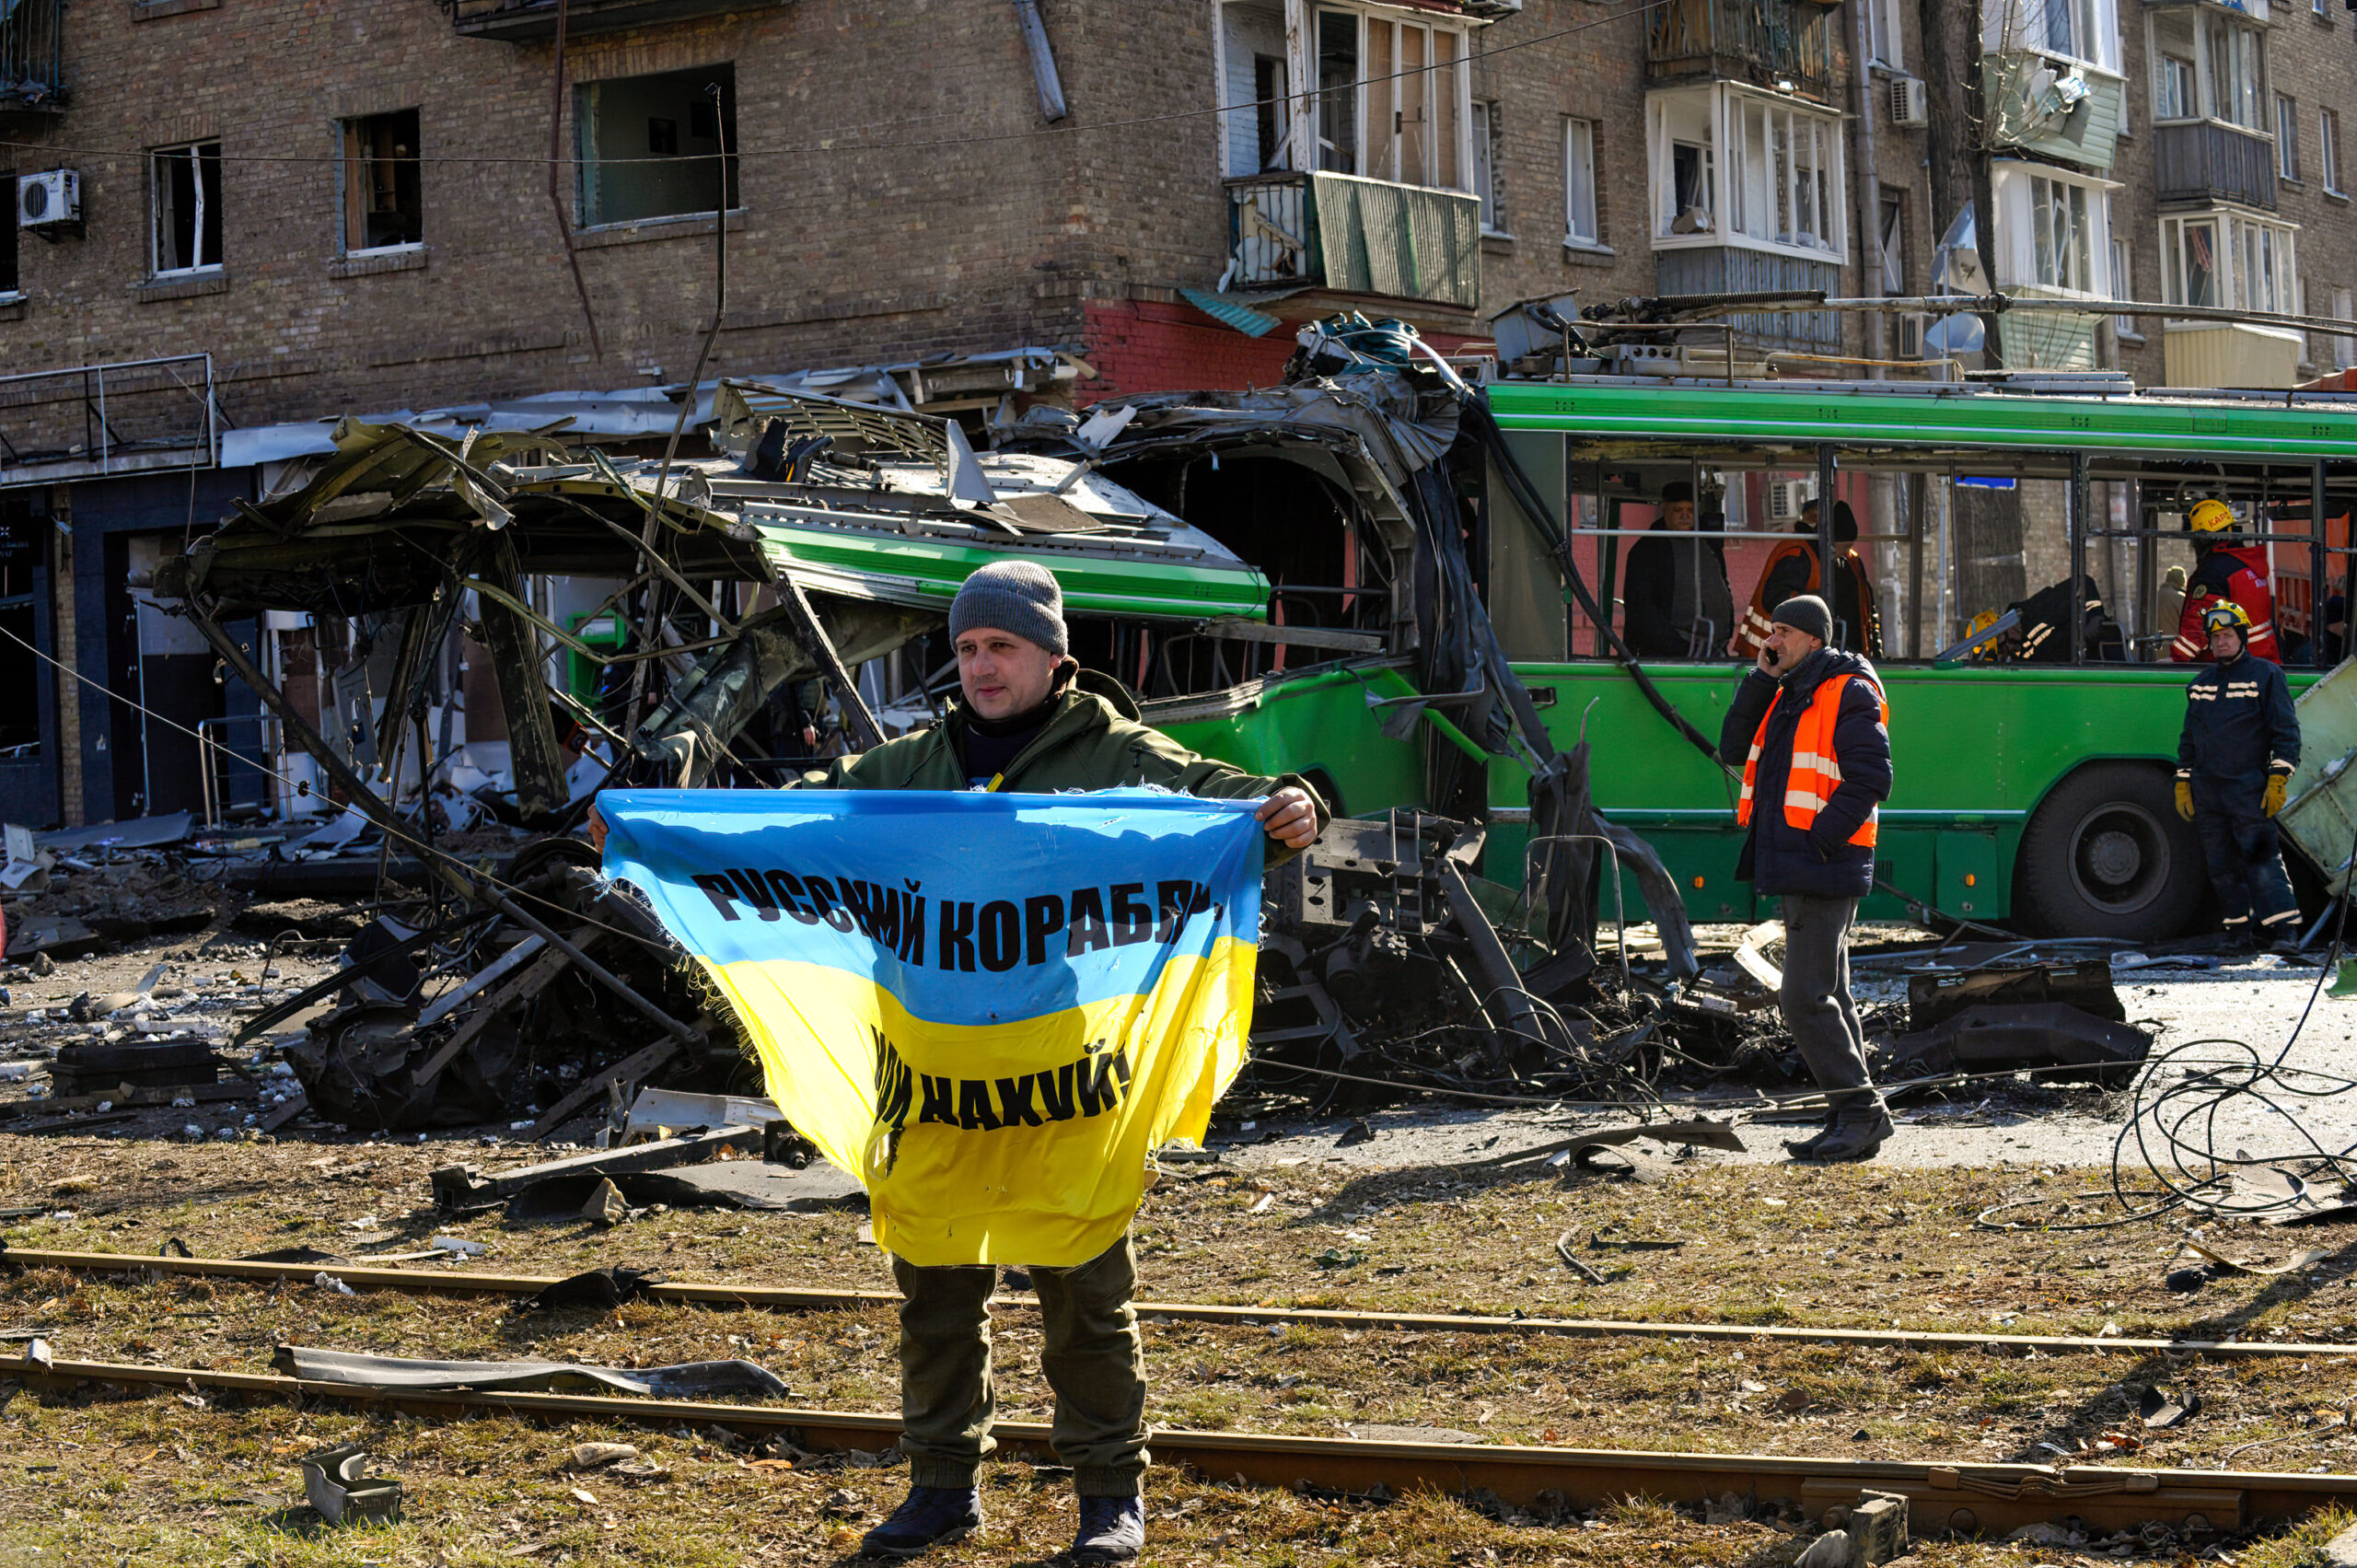 Policía y CNI vigilan a los voluntarios en Ucrania que puedan «poner en peligro la seguridad del Estado»